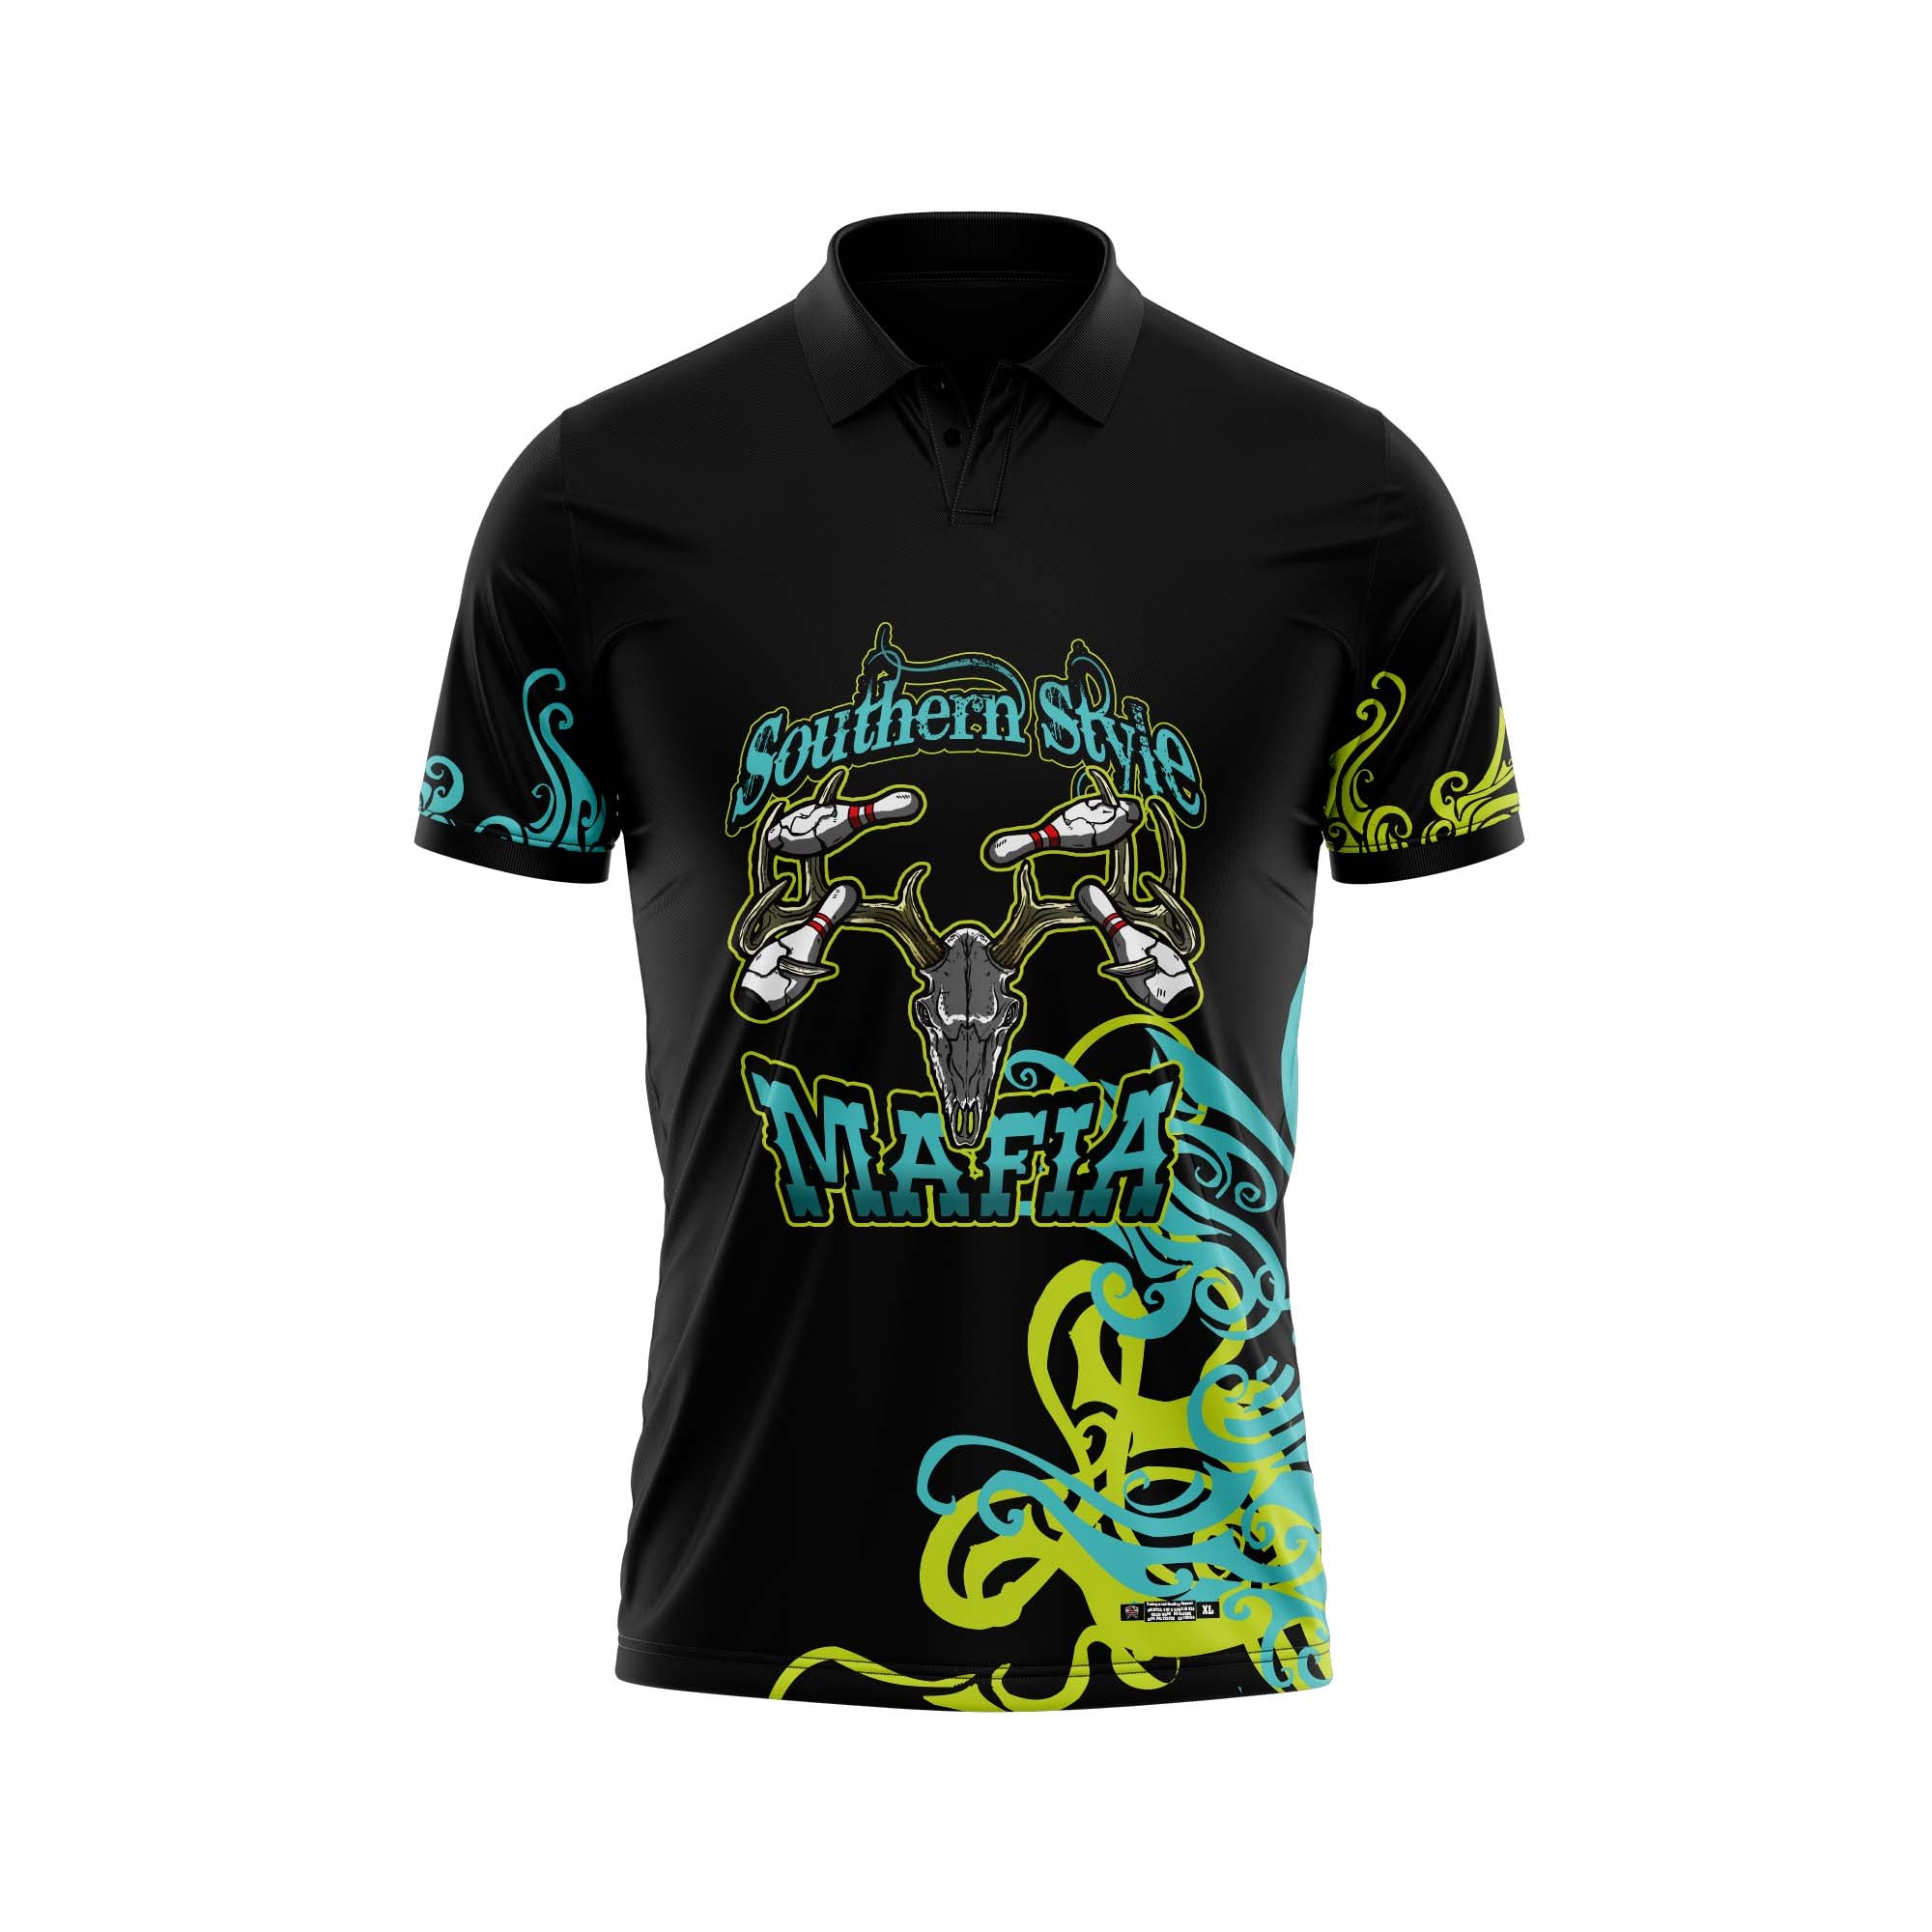 Southern Style Mafia Black / Aqua Jersey